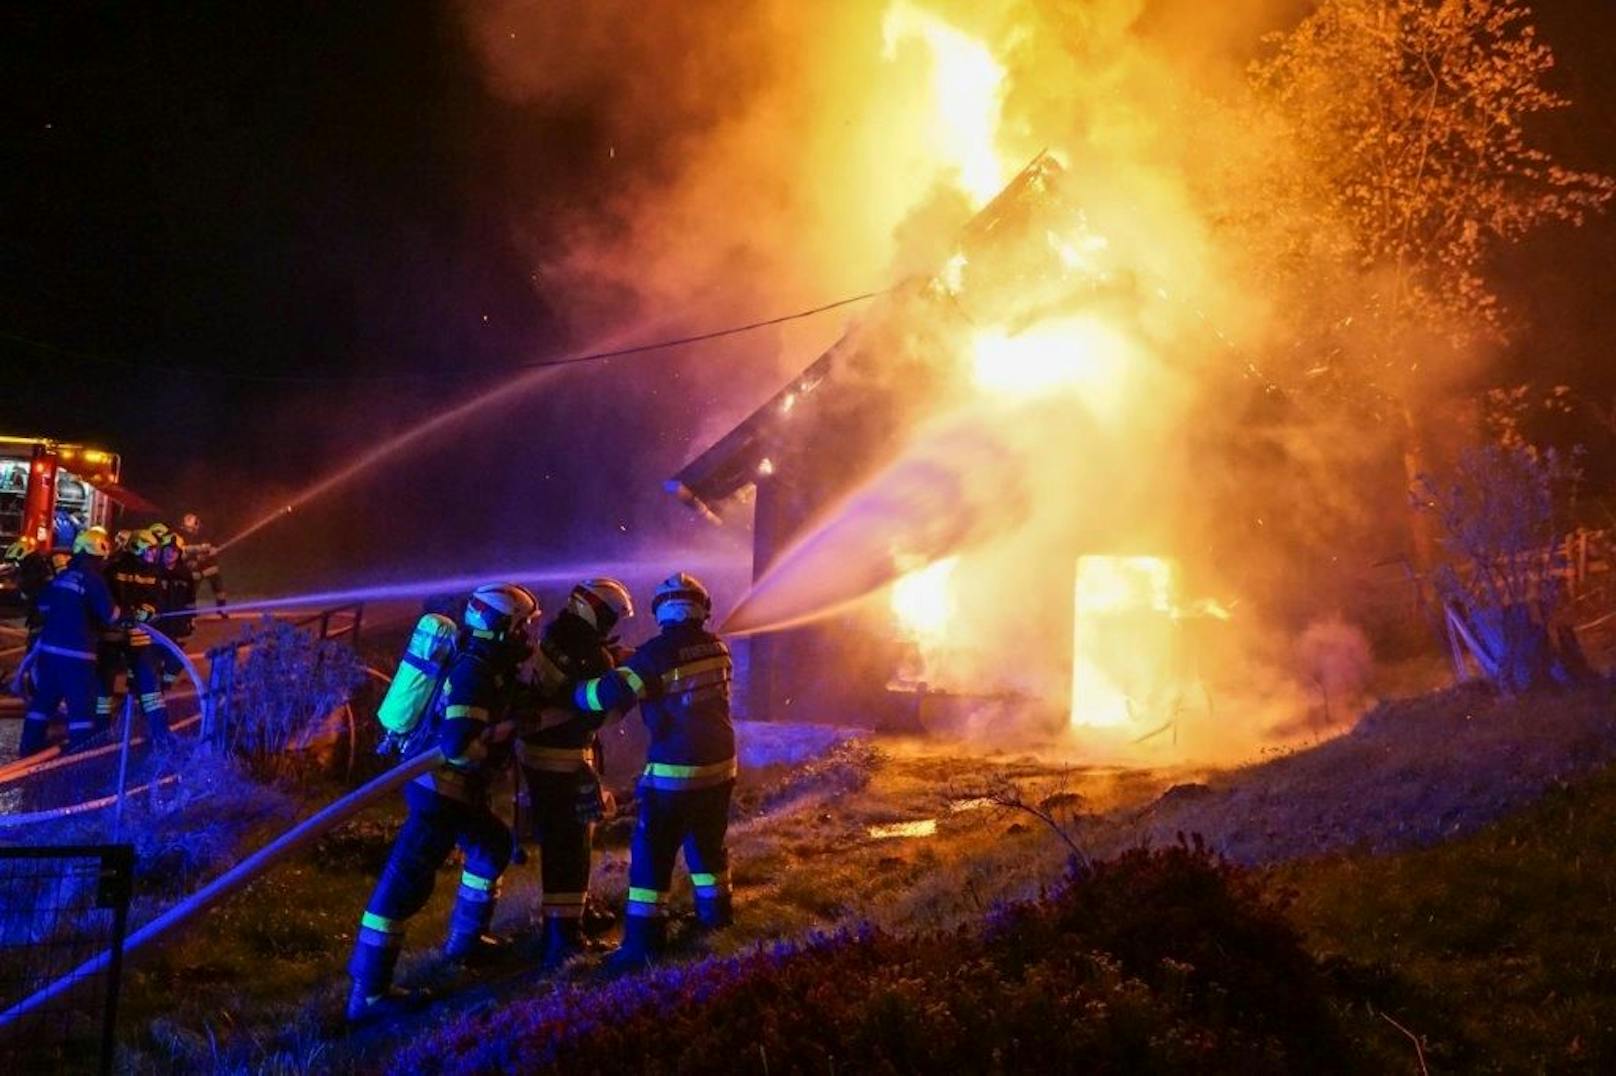 Wohnhausbrand in Kirchberg am Wechsel – 84 jährige entkommt knapp dem Flammentod!